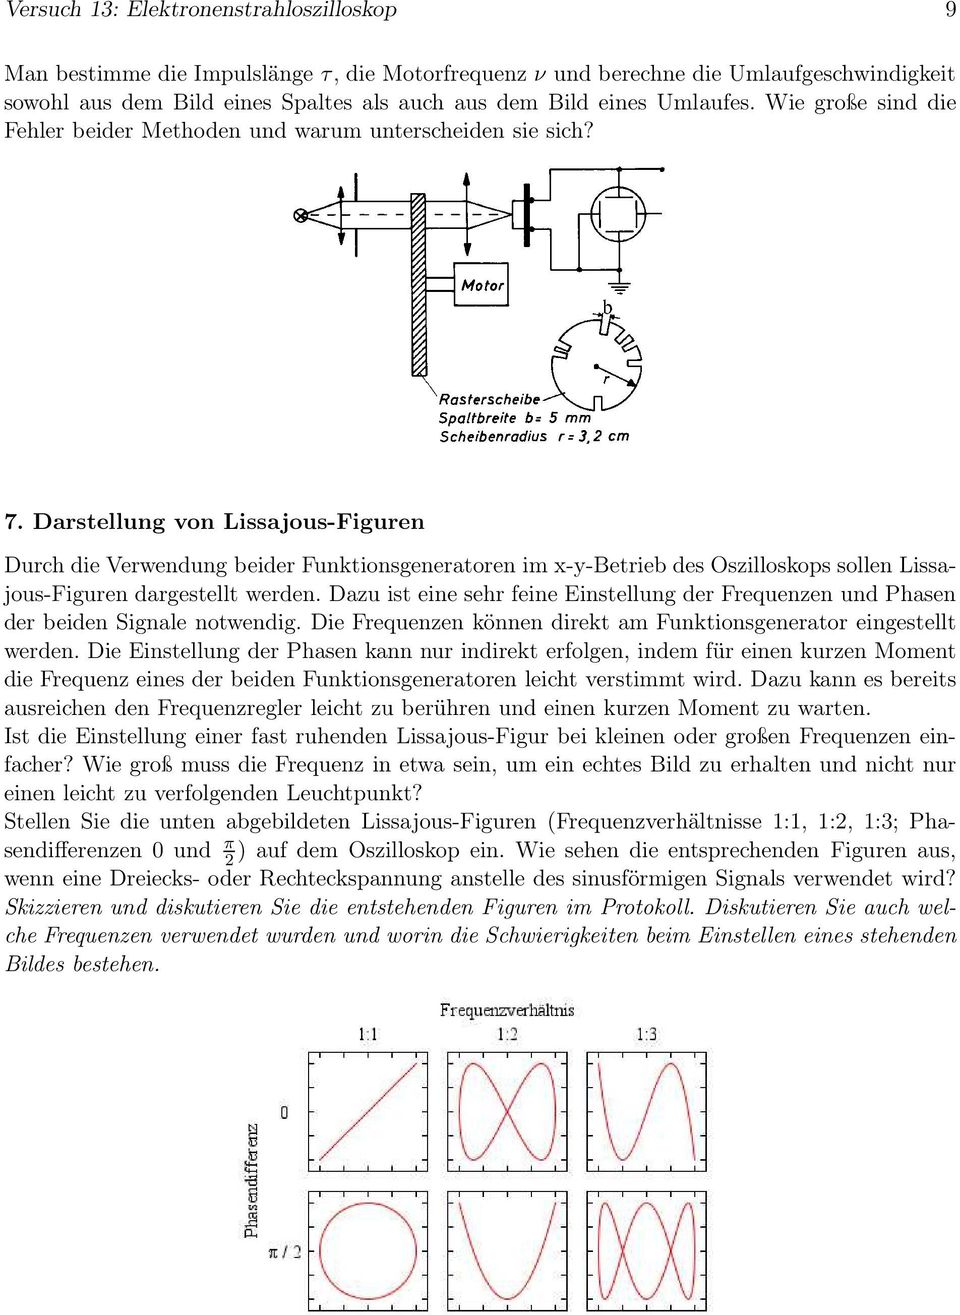 Darsellung von Lissajous-Figuren Durch die Verwendung beider Funkionsgeneraoren im x-y-berieb des Oszilloskops sollen Lissajous-Figuren dargesell werden.